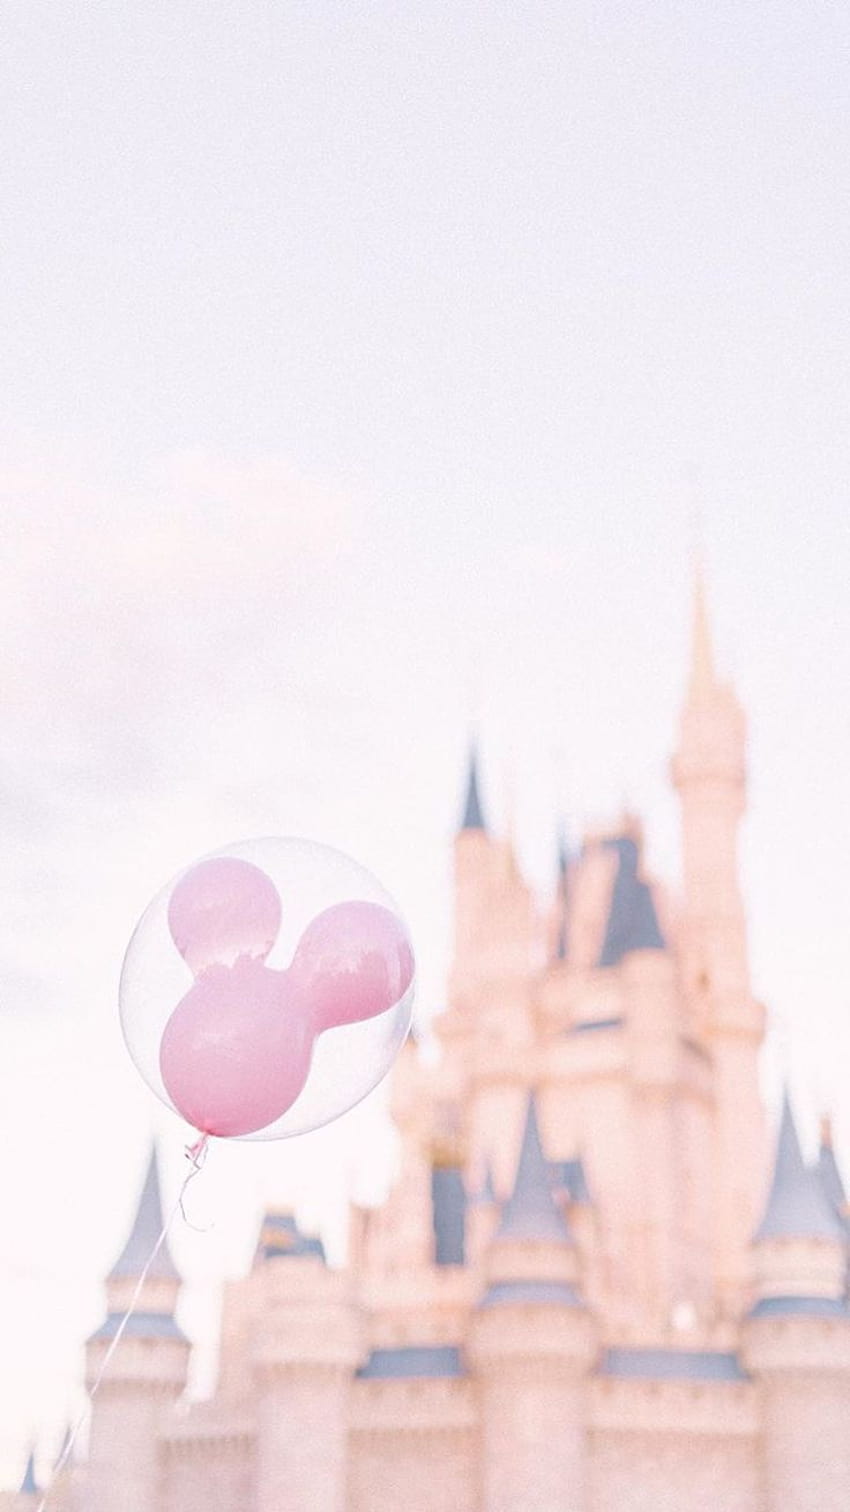 Instagram @grandfloridiangirls là trang web hoàn hảo dành cho những ai yêu thích Disney! Được thiết kế đặc biệt cho iPhone, những hình nền Disney mang phong cách hiện đại và độc đáo sẽ làm bạn ngỡ ngàng. Hãy tham gia cộng đồng này và trở thành một trong những Grand Floridian Girls!